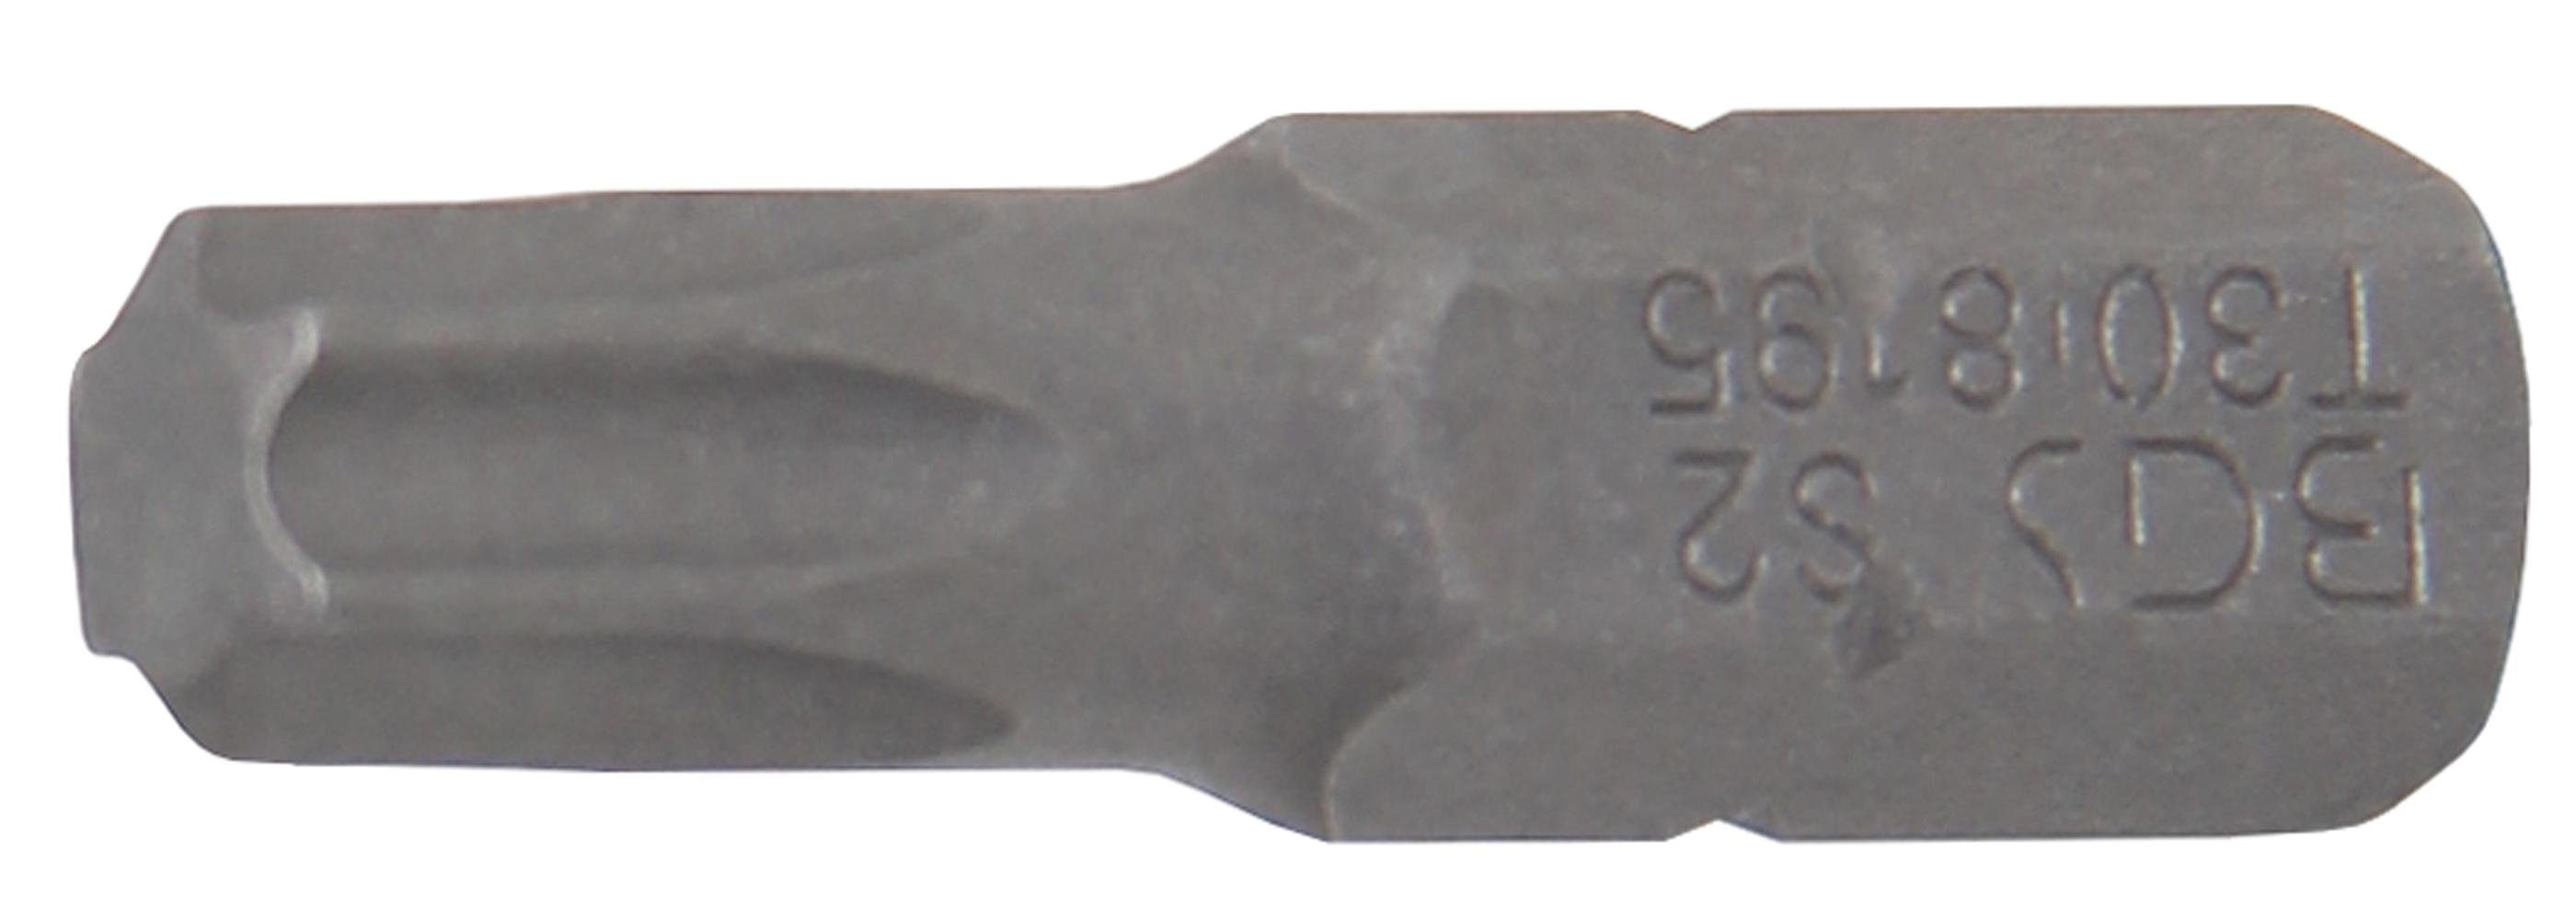 BGS technic Bit-Schraubendreher Bit, Antrieb Außensechskant 6,3 mm (1/4), T-Profil (für Torx) T30